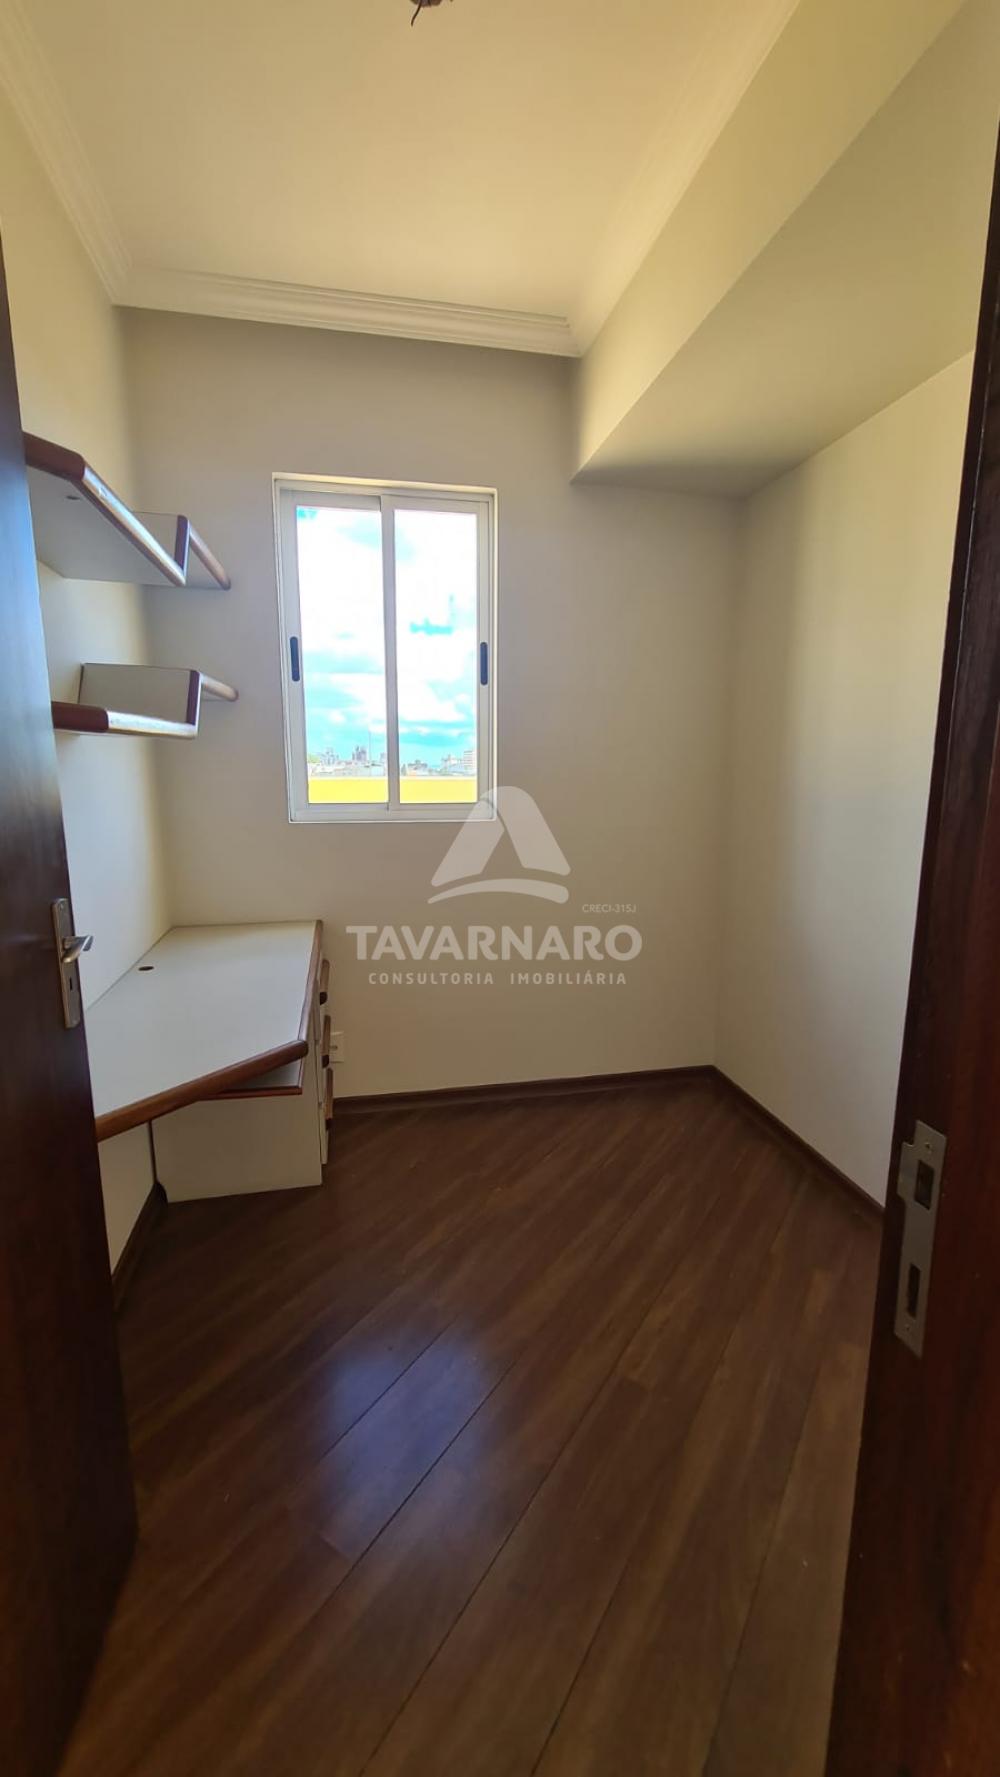 Comprar Apartamento / Cobertura em Ponta Grossa R$ 550.000,00 - Foto 9